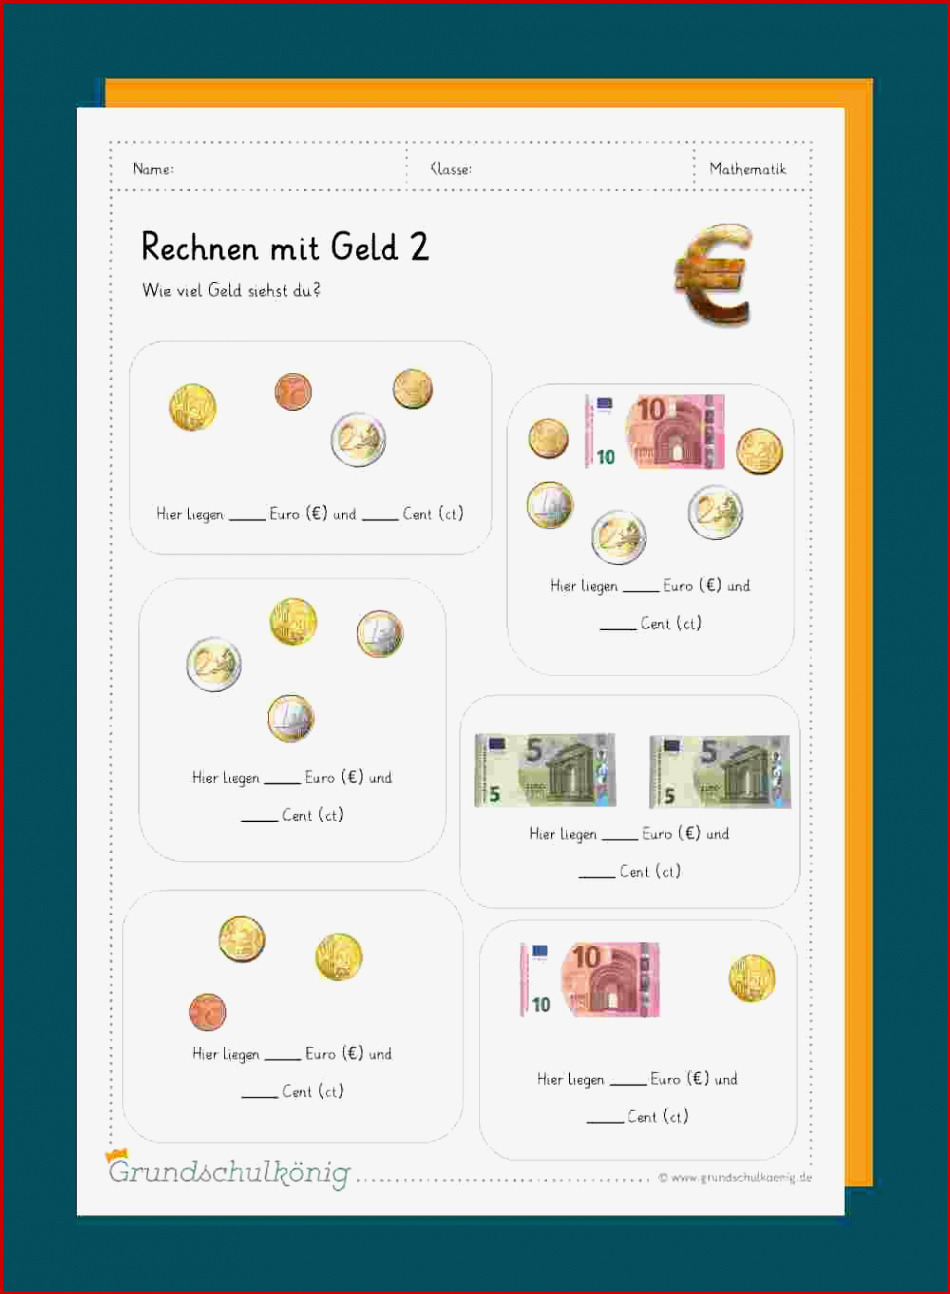 Euro Und Cent